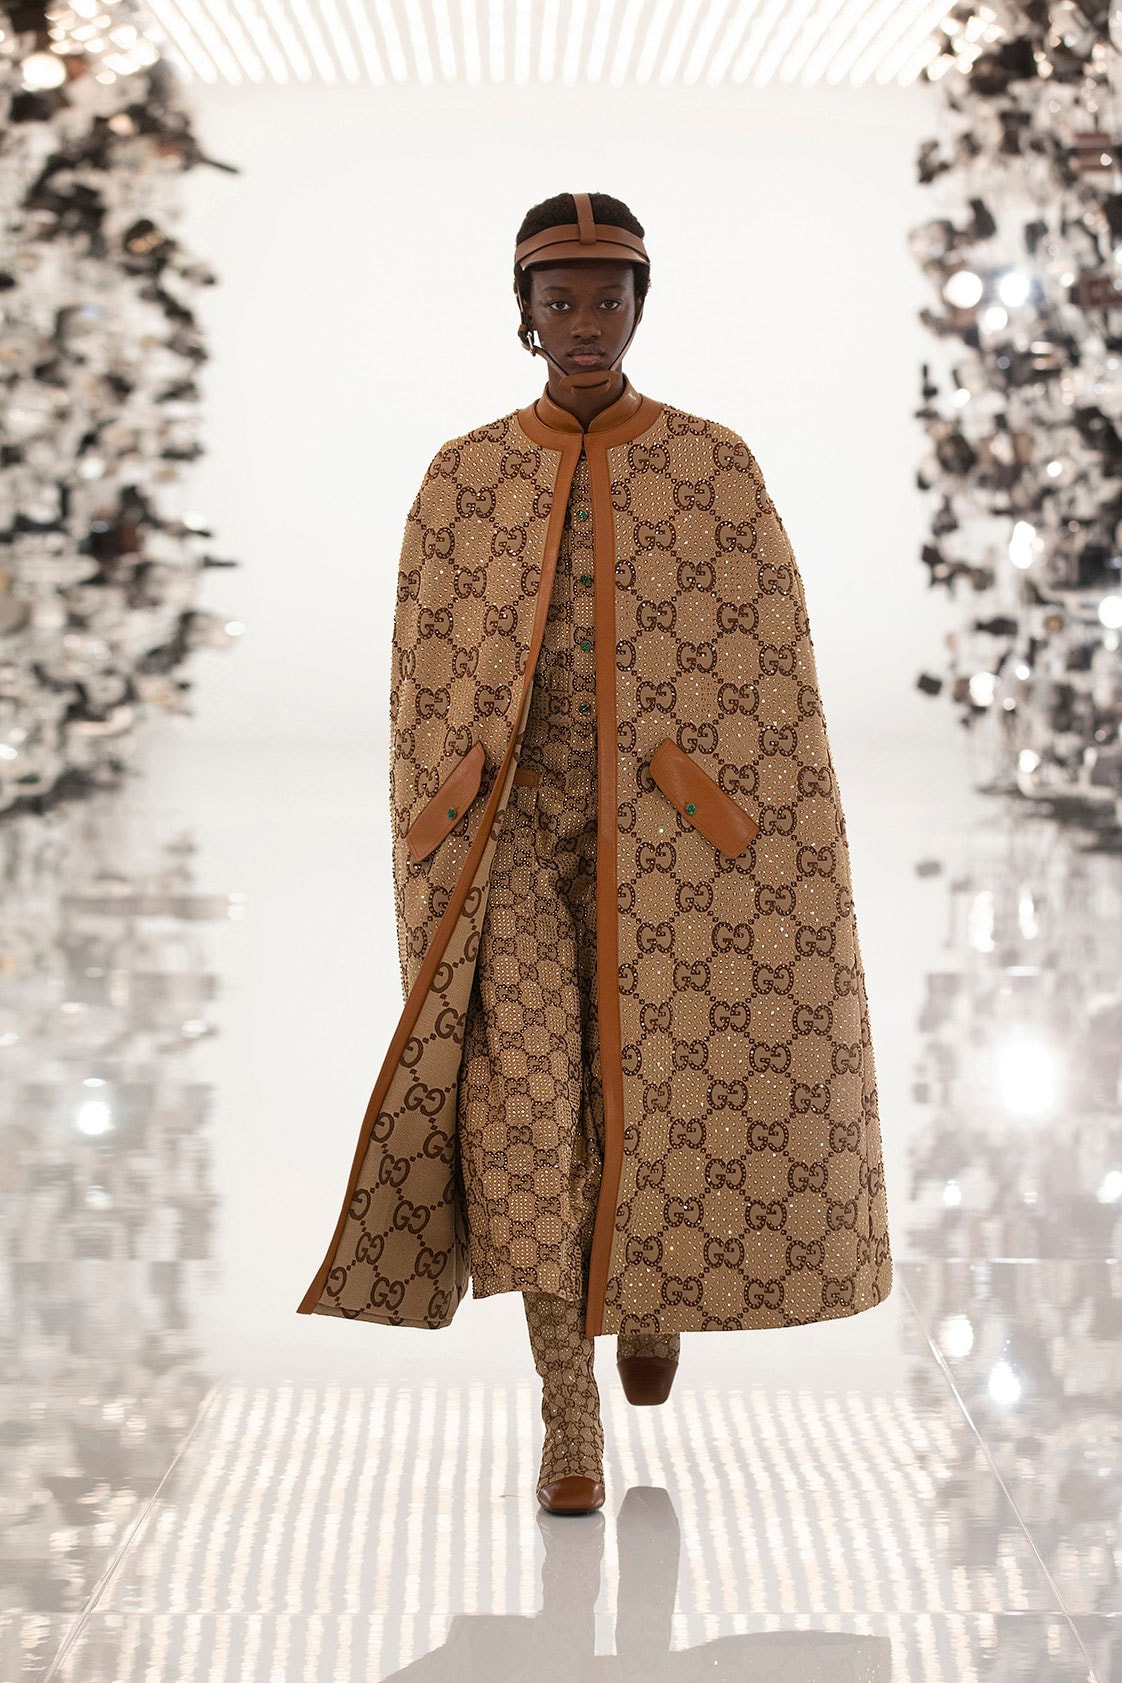 Gucci Balenciaga Collaboration Aria Collection 